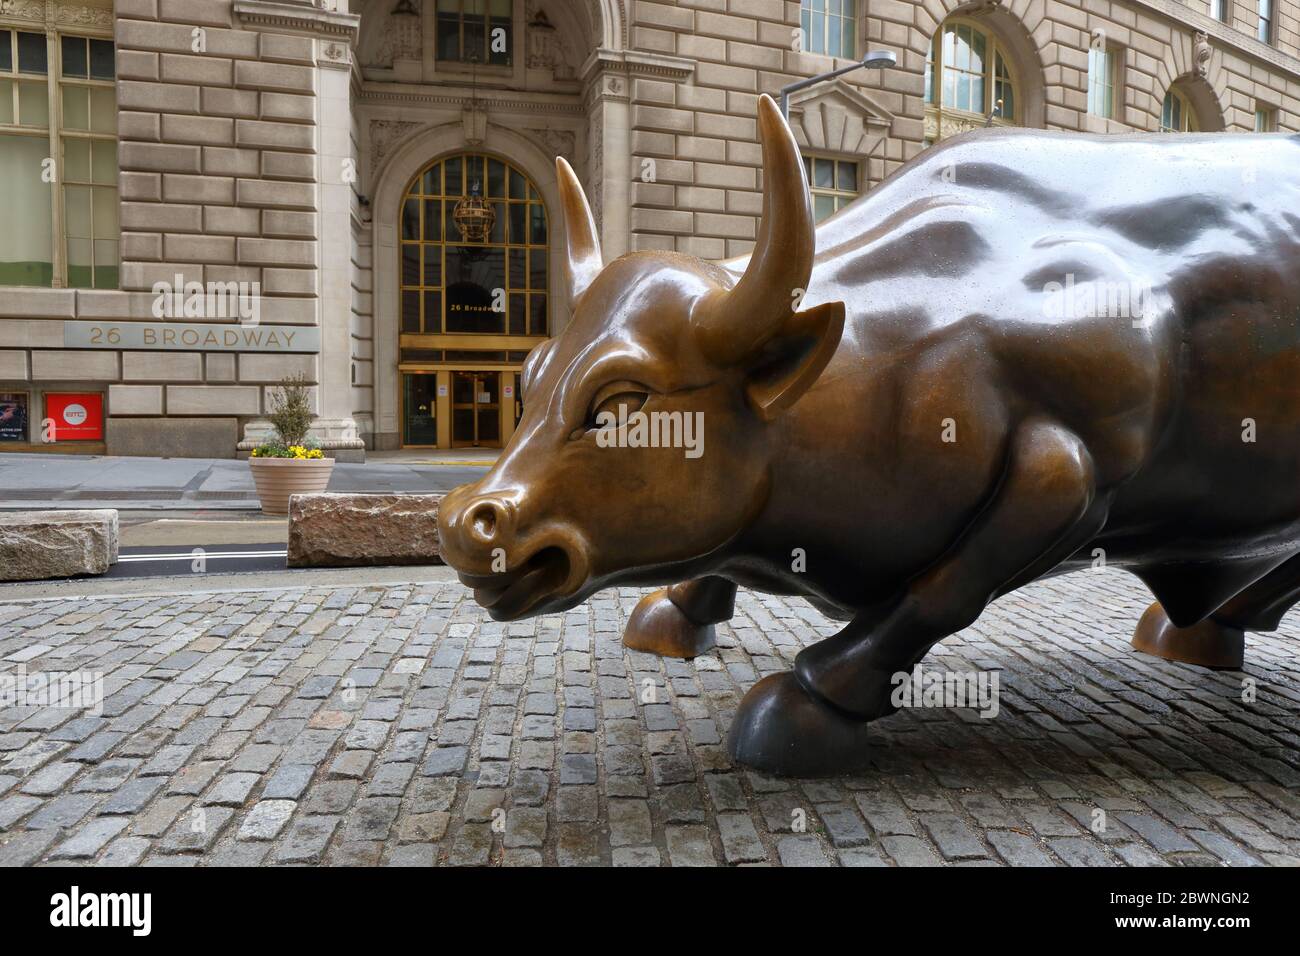 Cargando Bull de Arturo Di Modica, frente al 26 Broadway, Nueva York. Una escultura de bronce que ha llegado a representar a Wall Street. No hay gente Foto de stock